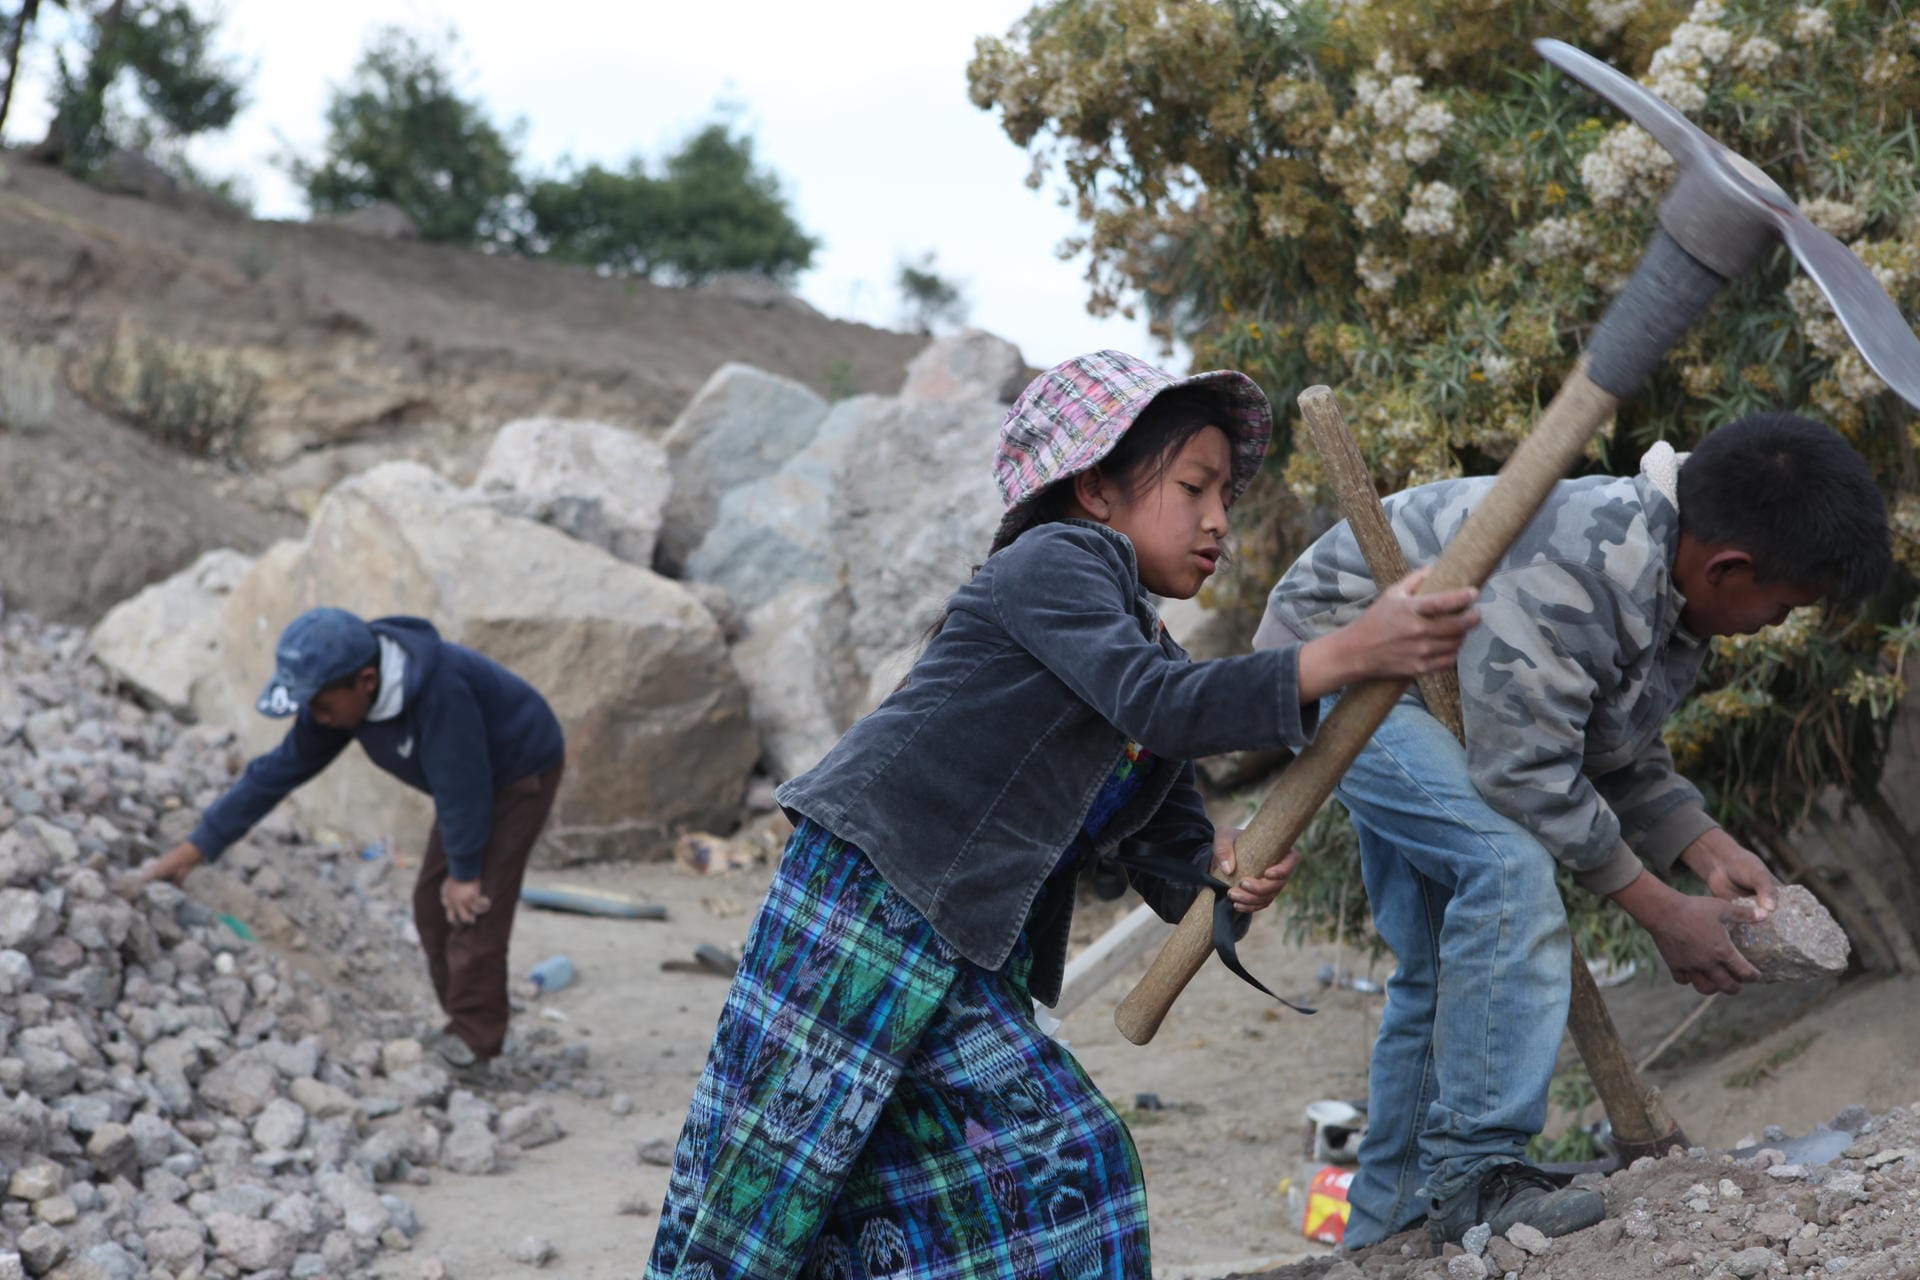 Viel zu viele Kinder weltweit arbeiten unter ausbeuterischen Bedingungen.